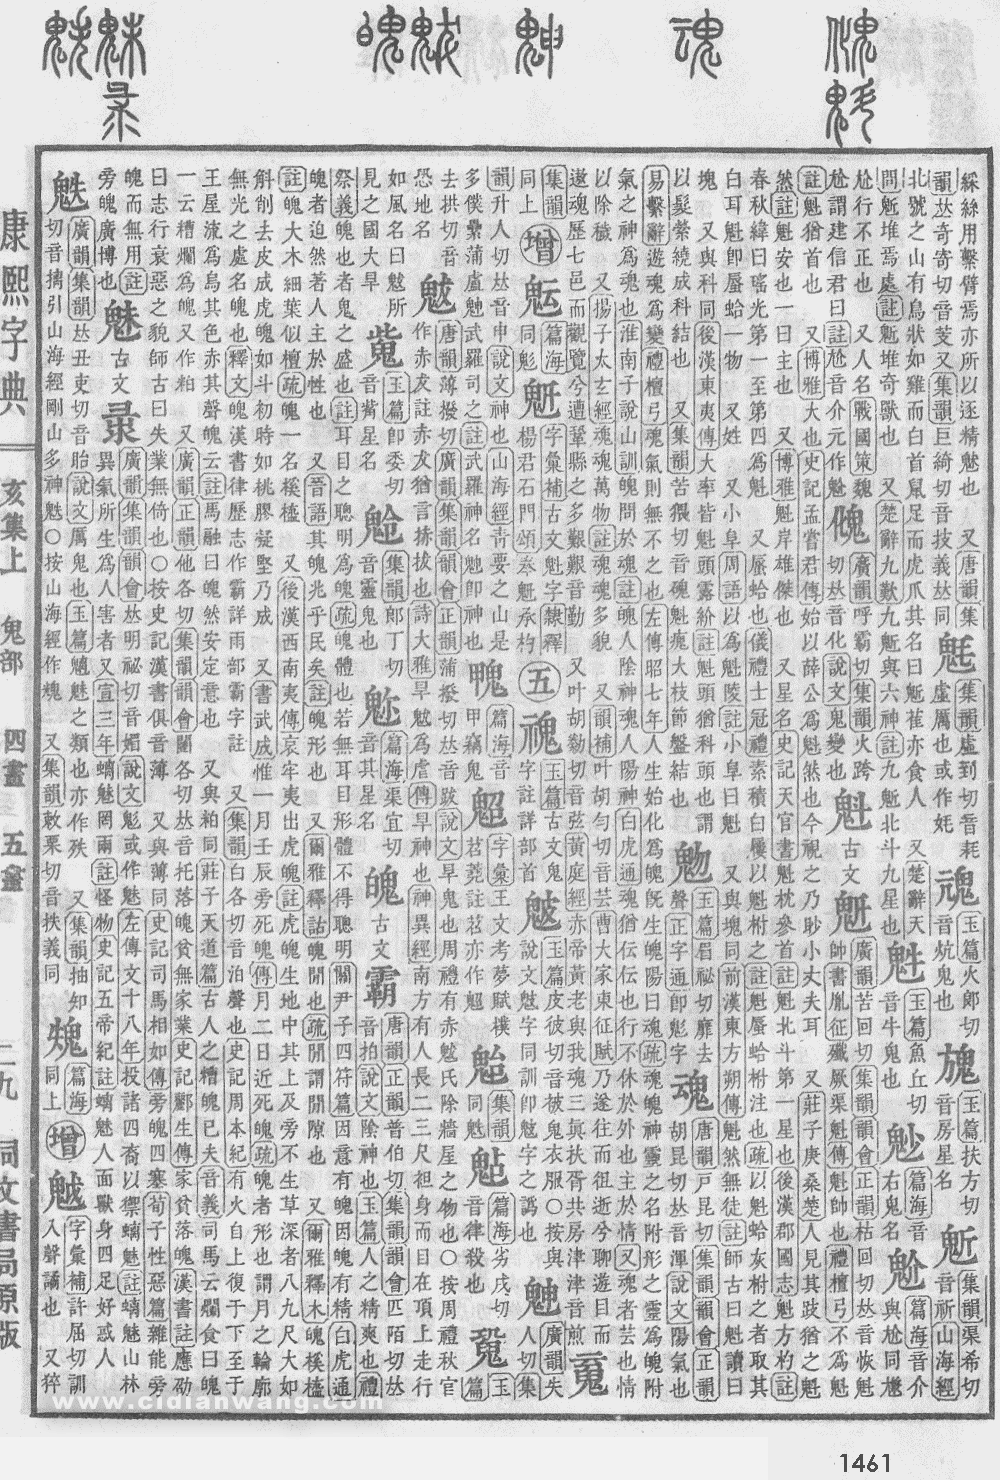 康熙字典掃描版第1461頁